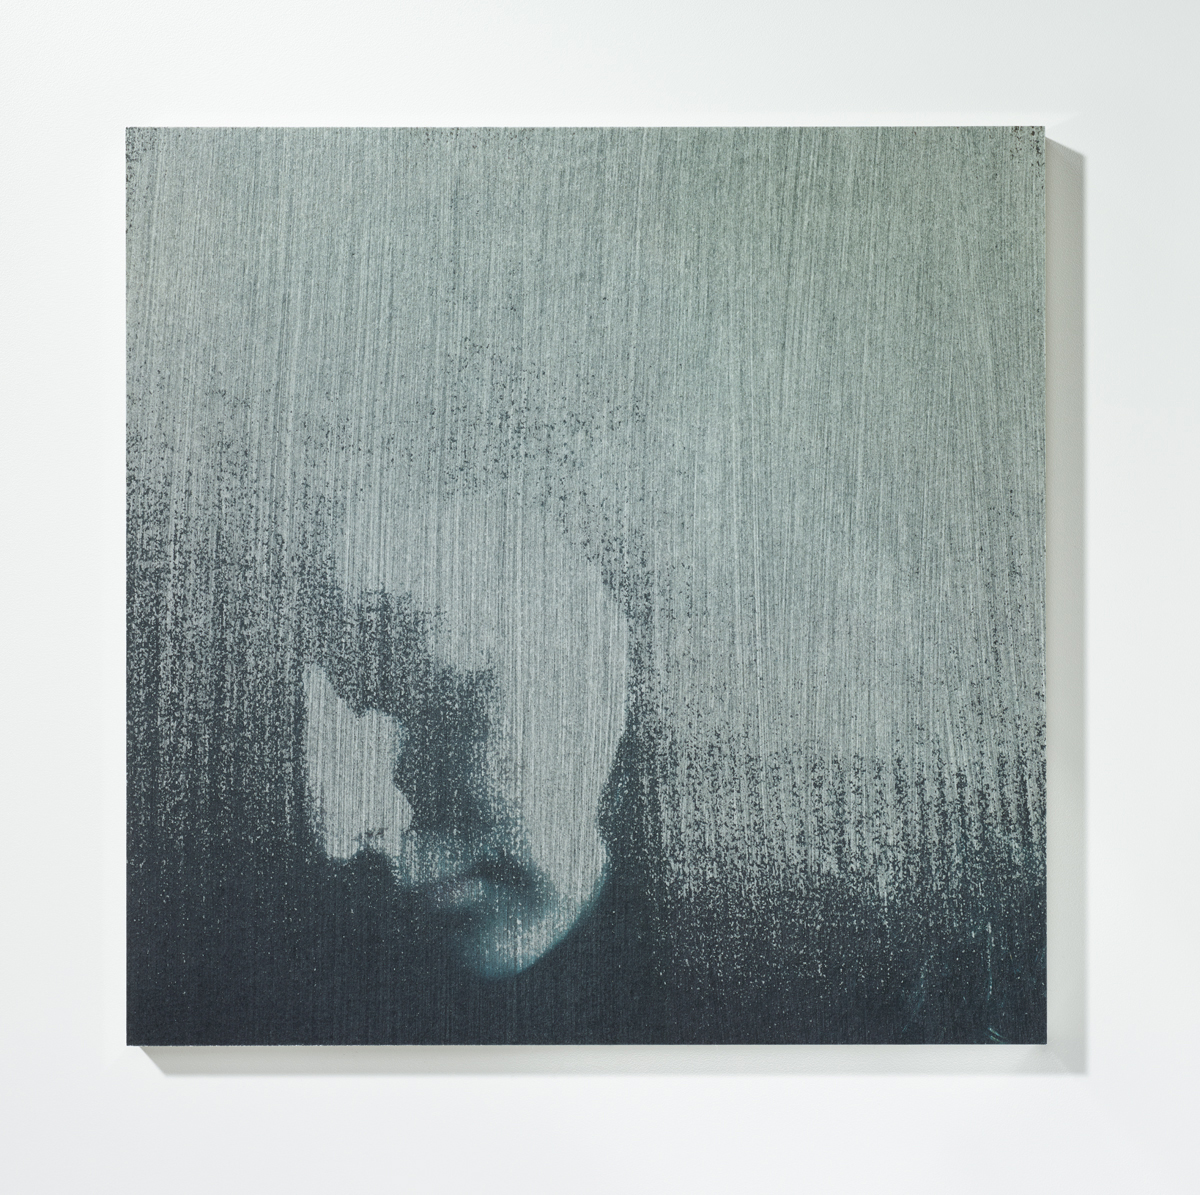 Löschung 2, 201630 x 30 cmPigmentprint, gelöscht, gefirnisst, kaschiert auf Acrylglas